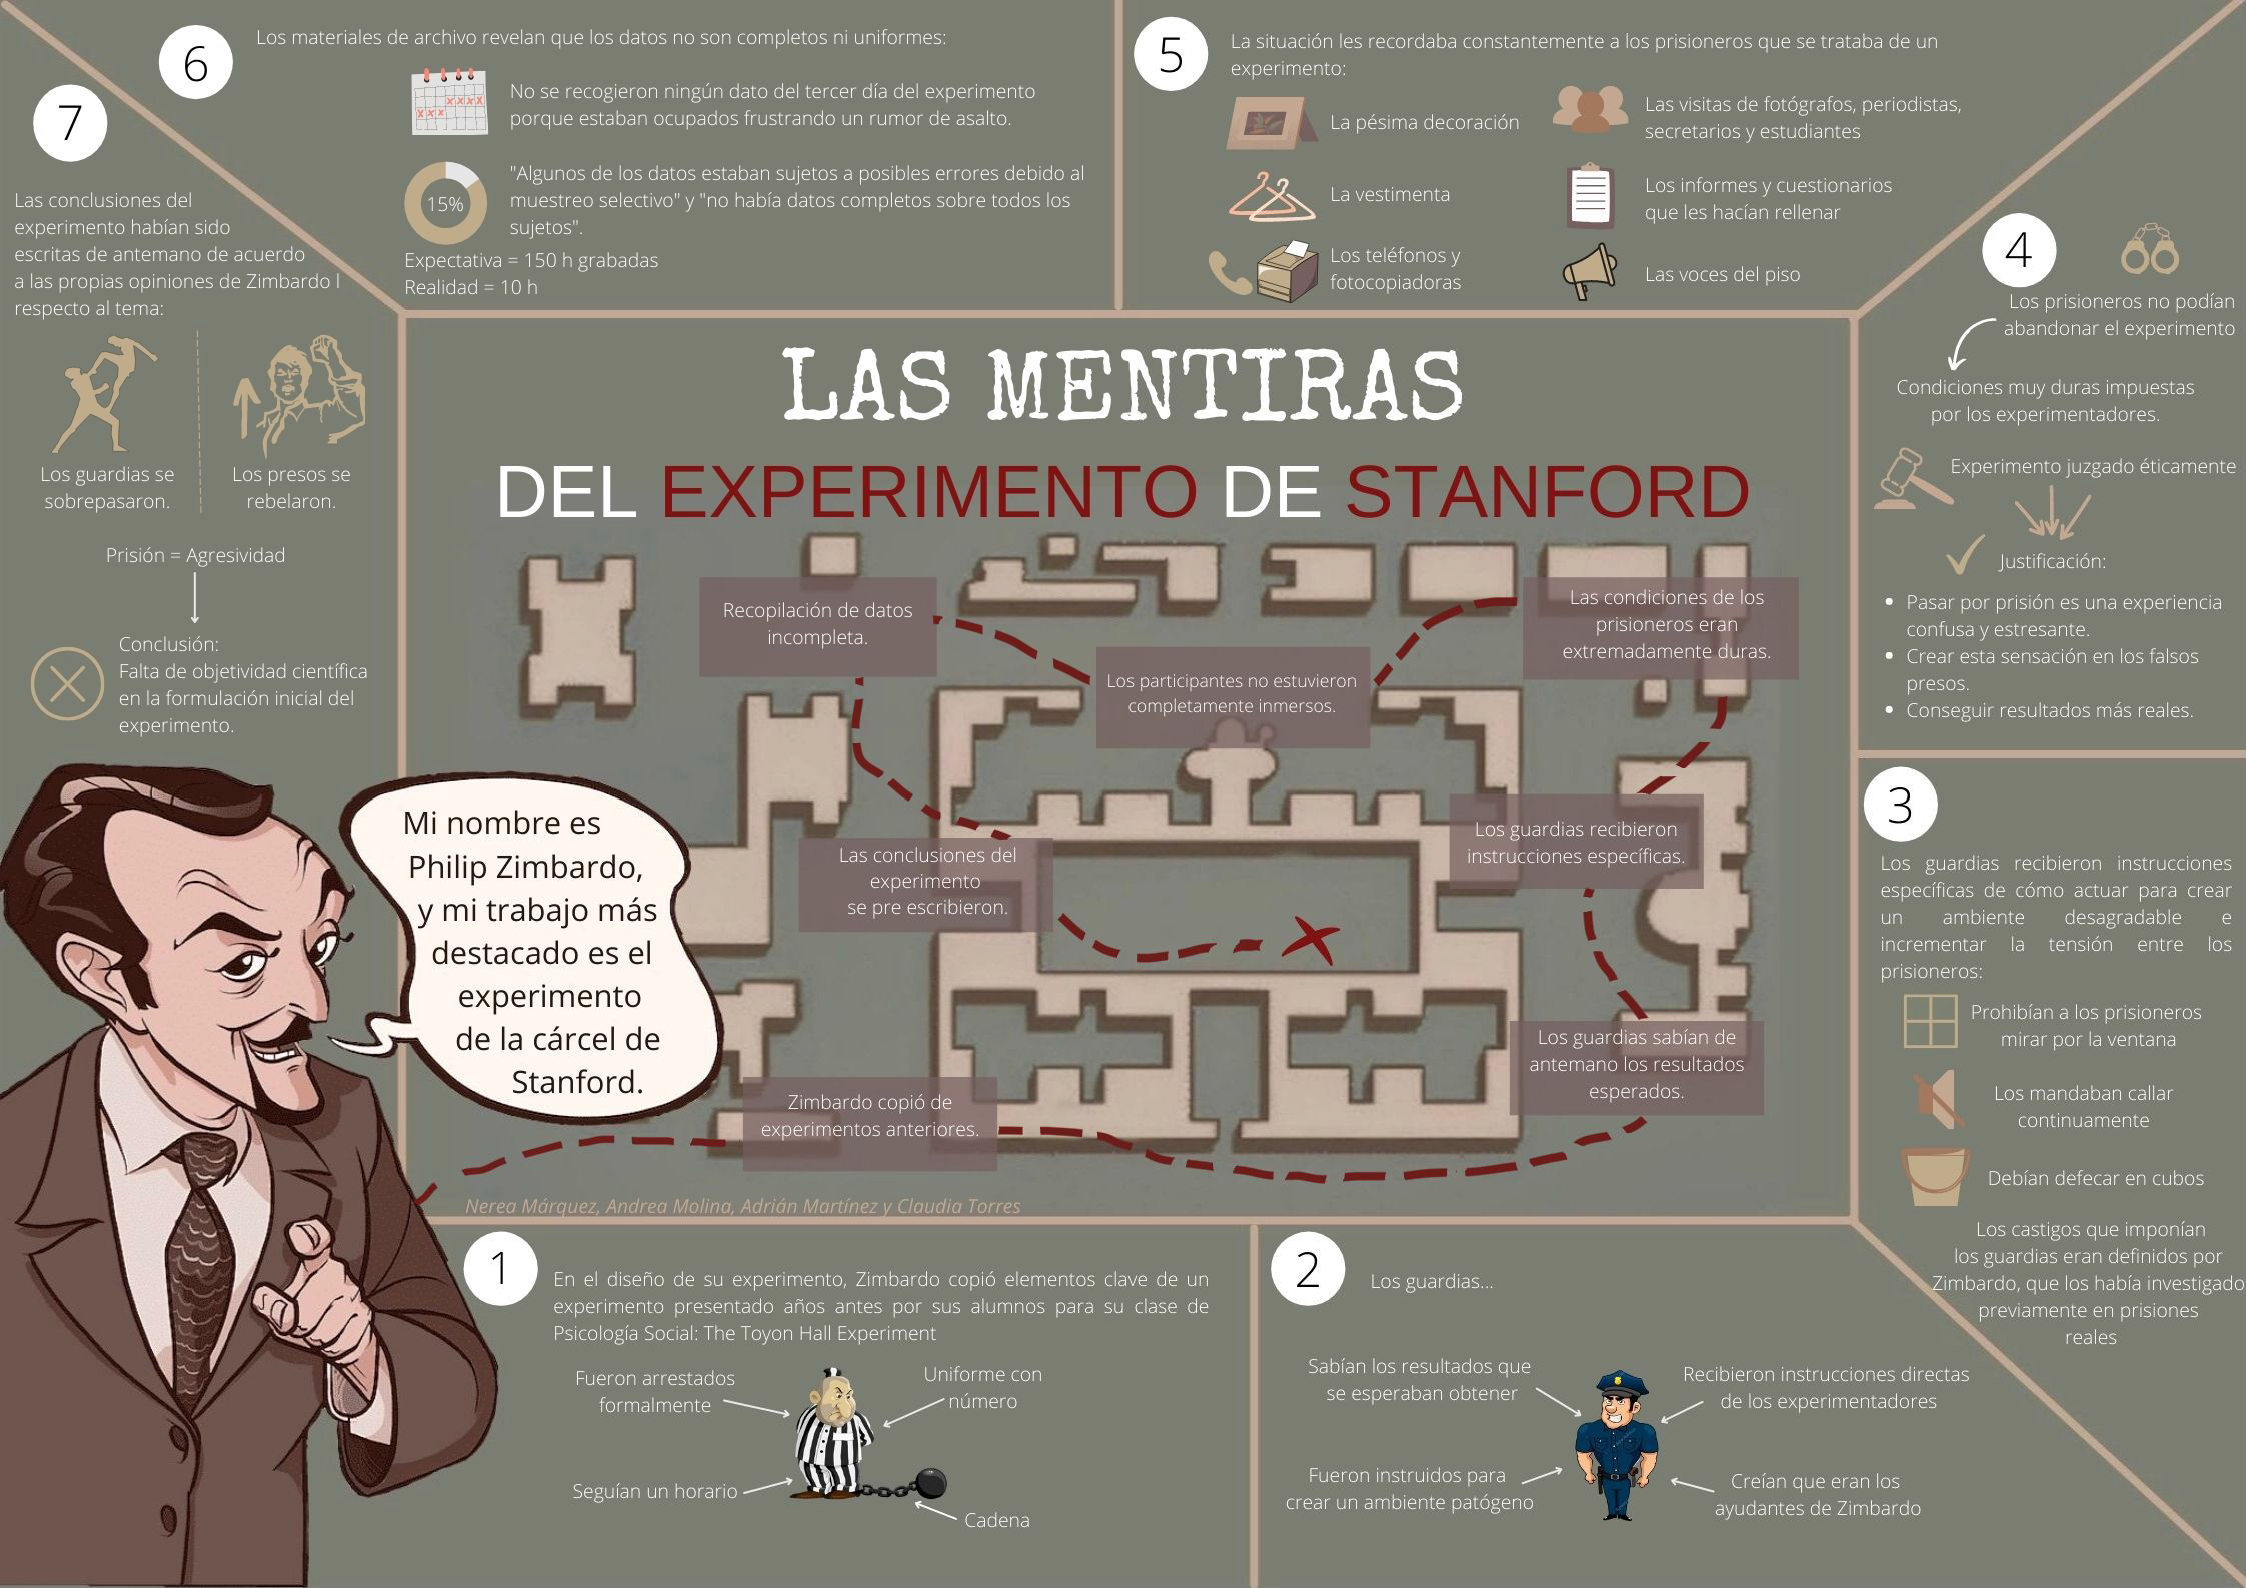 Las mentiras del experimento de Stanford